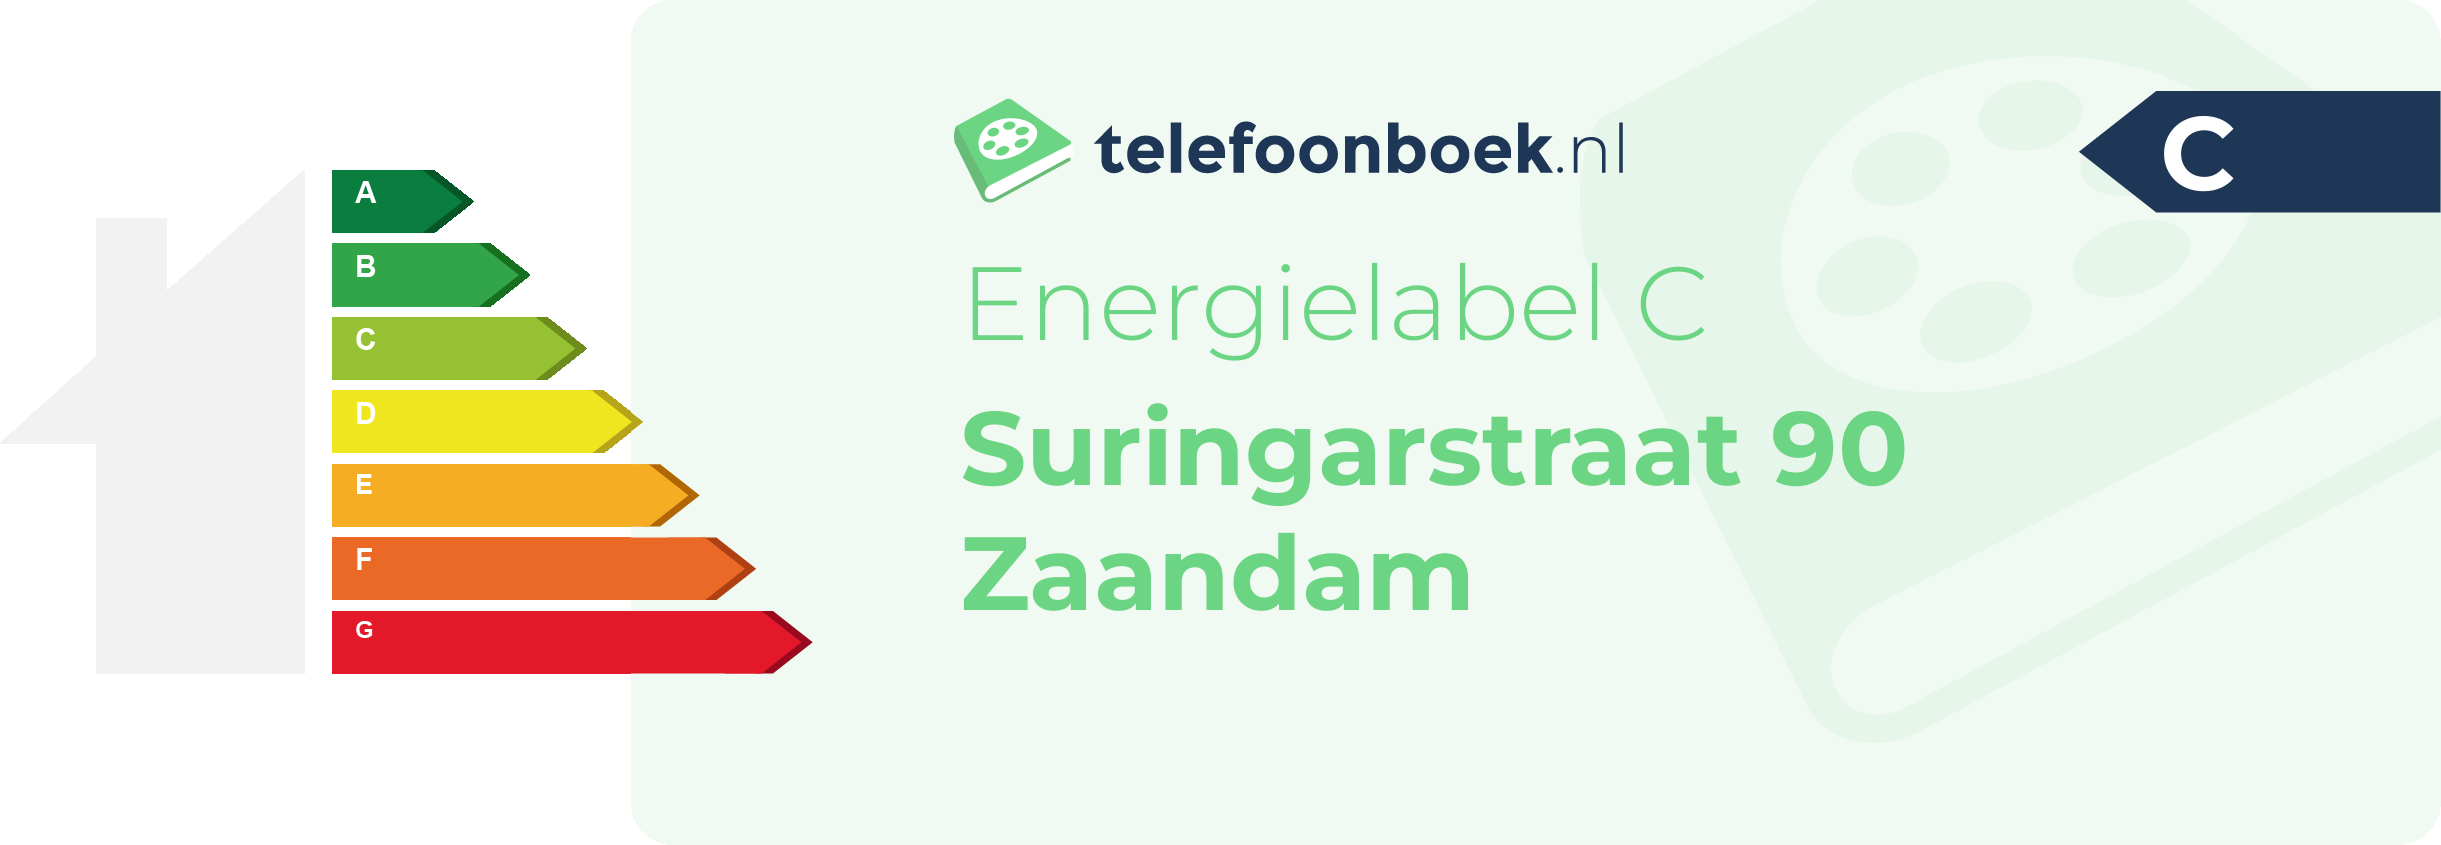 Energielabel Suringarstraat 90 Zaandam